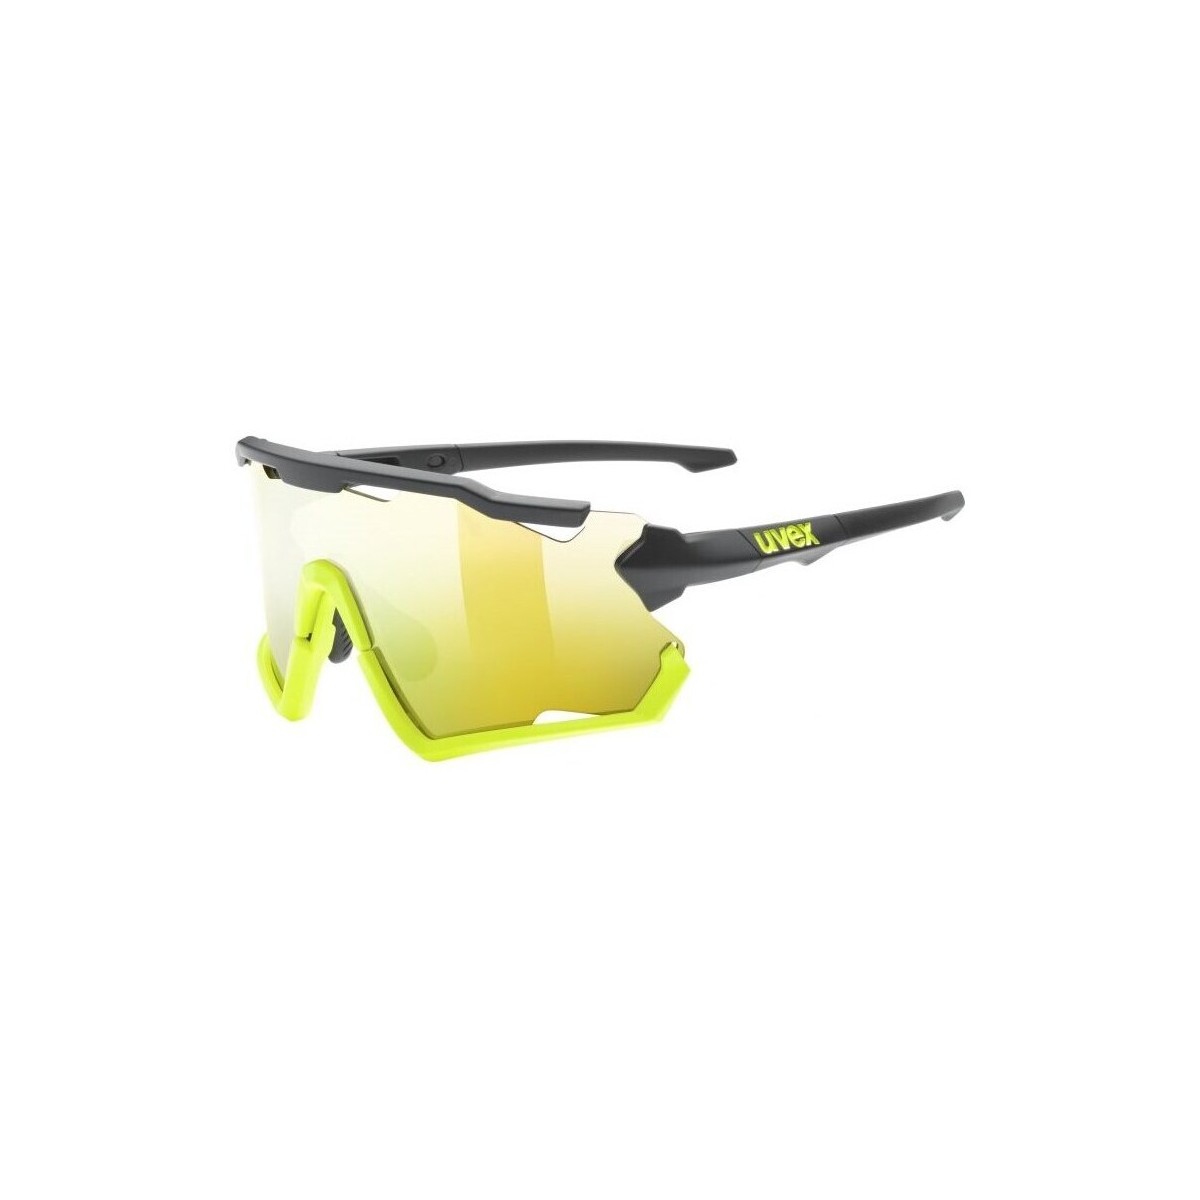 Hodinky & Bižuterie sluneční brýle Uvex Sportstyle 228 Žluté, Černé